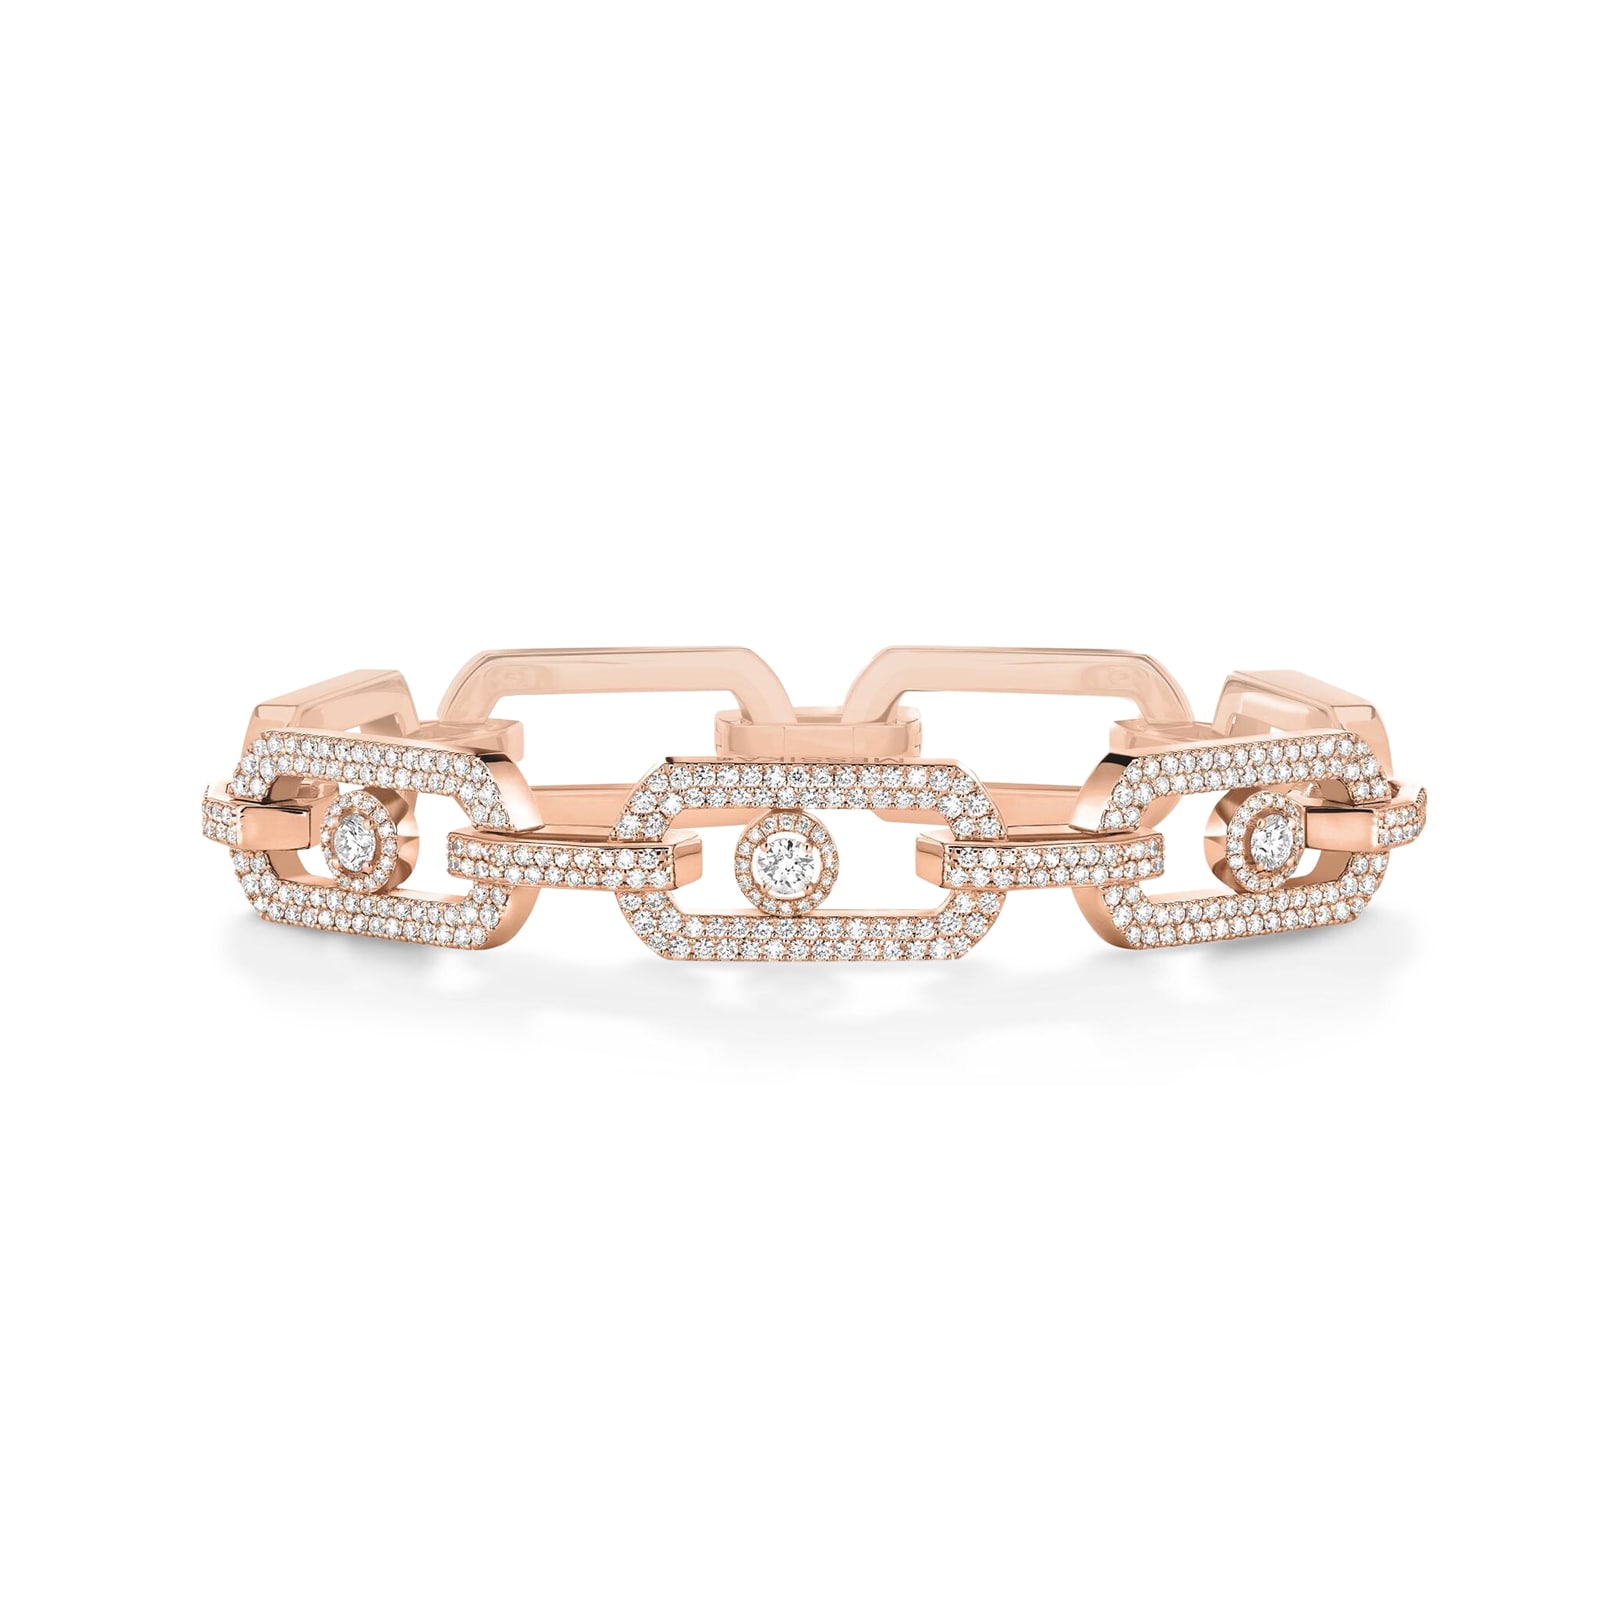 Buy Exclusive Premium Quality Designer Fancy Rose Gold Diamond Bracelet  Online From Surat Wholesale Shop.